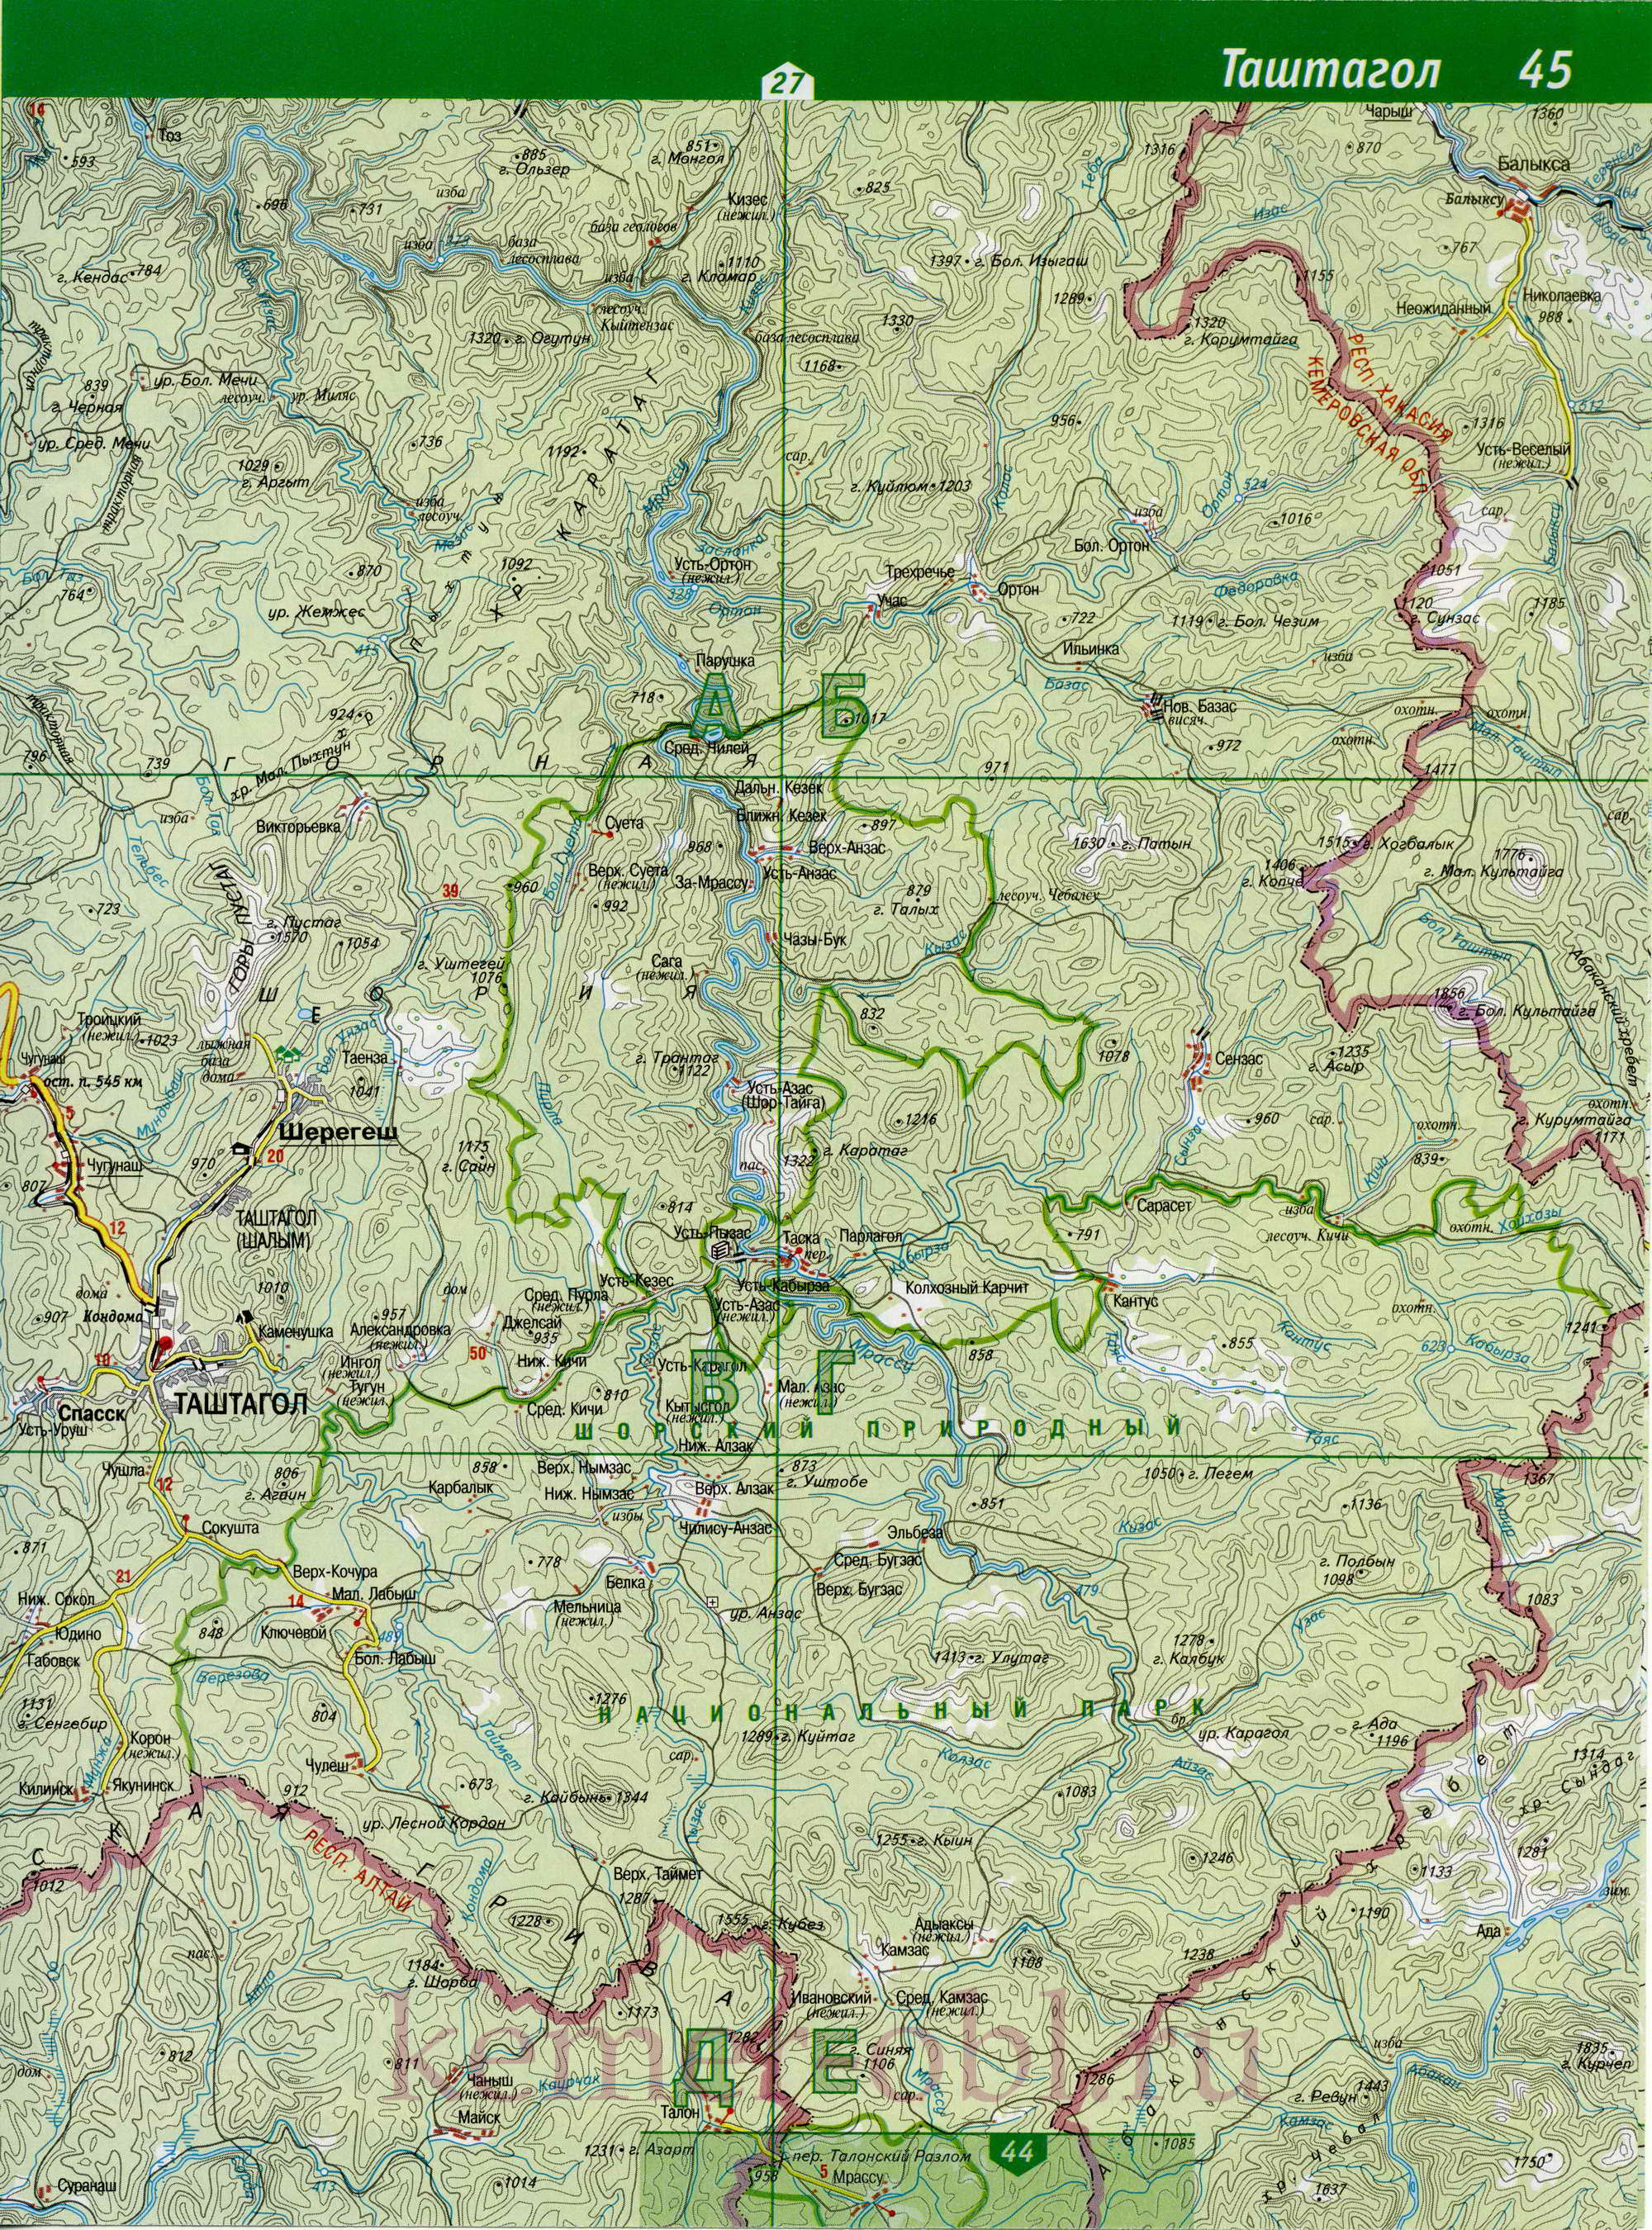 Карта Таштагольский р-он, Кемеровская область. Подробная топографическая карта Таштагольского района, B0 - 